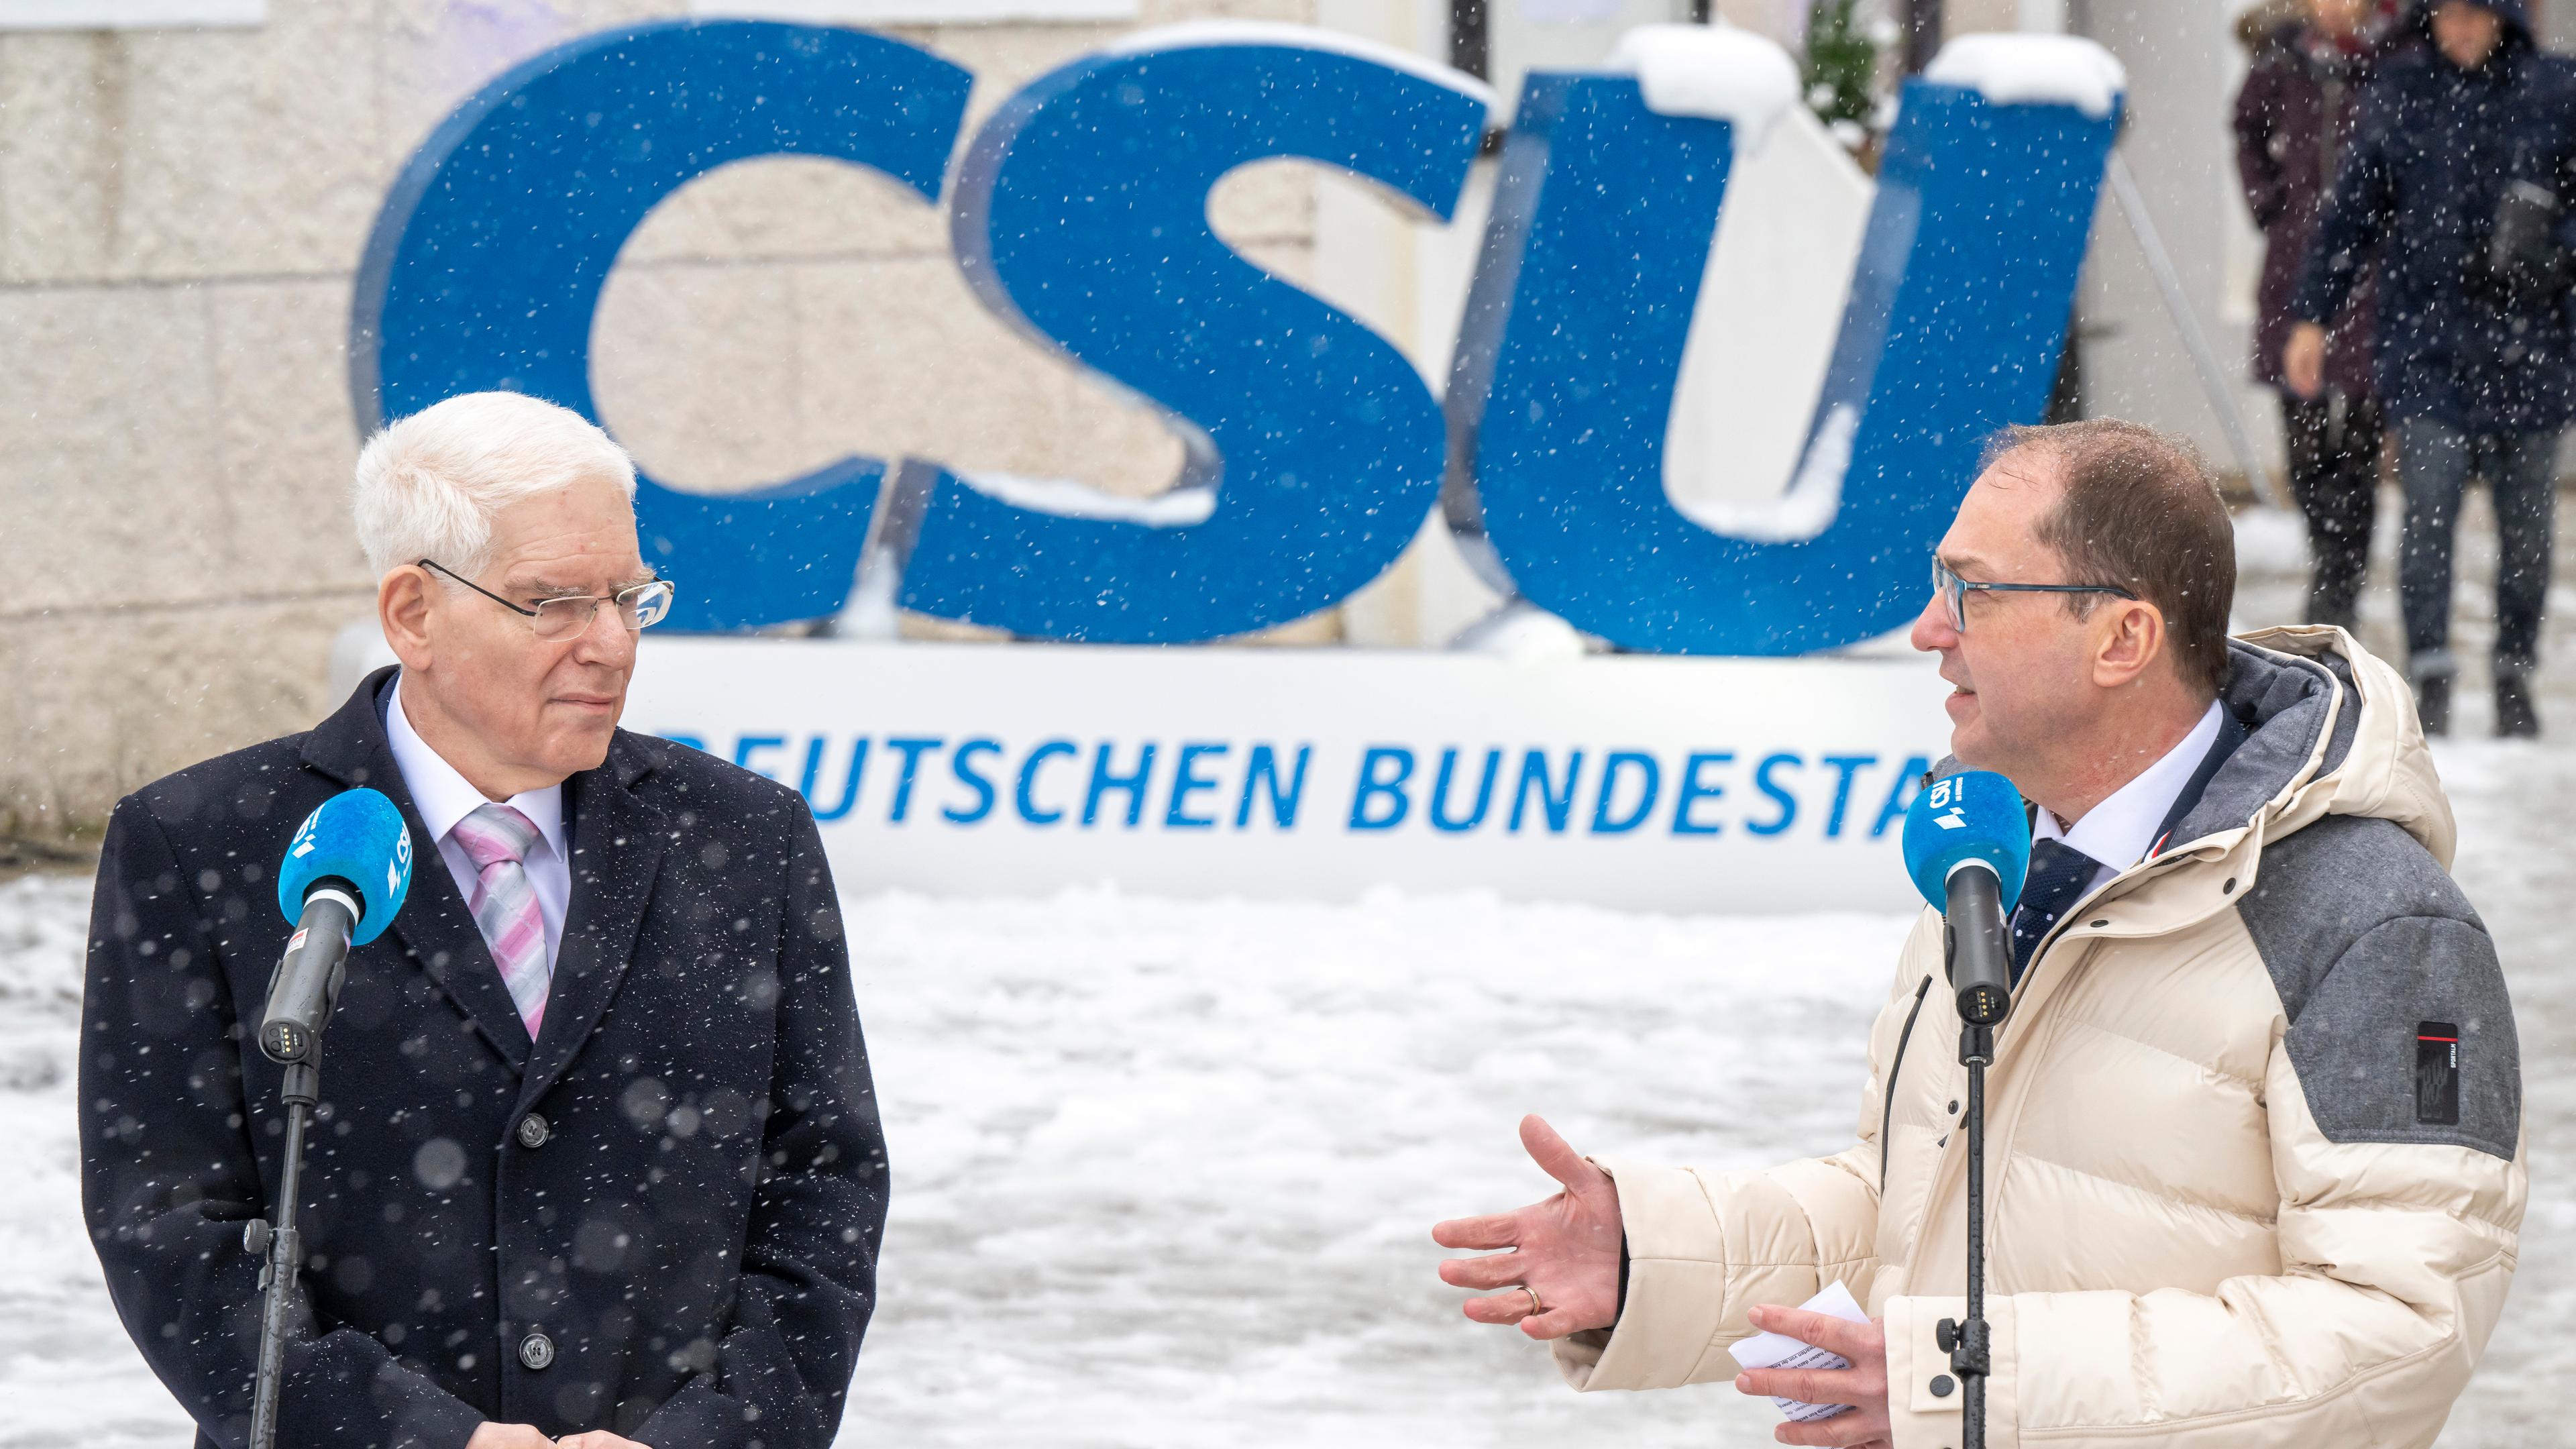 Josef Schuster und Alexander Dobrint hinter Mikrofonen im Schnee